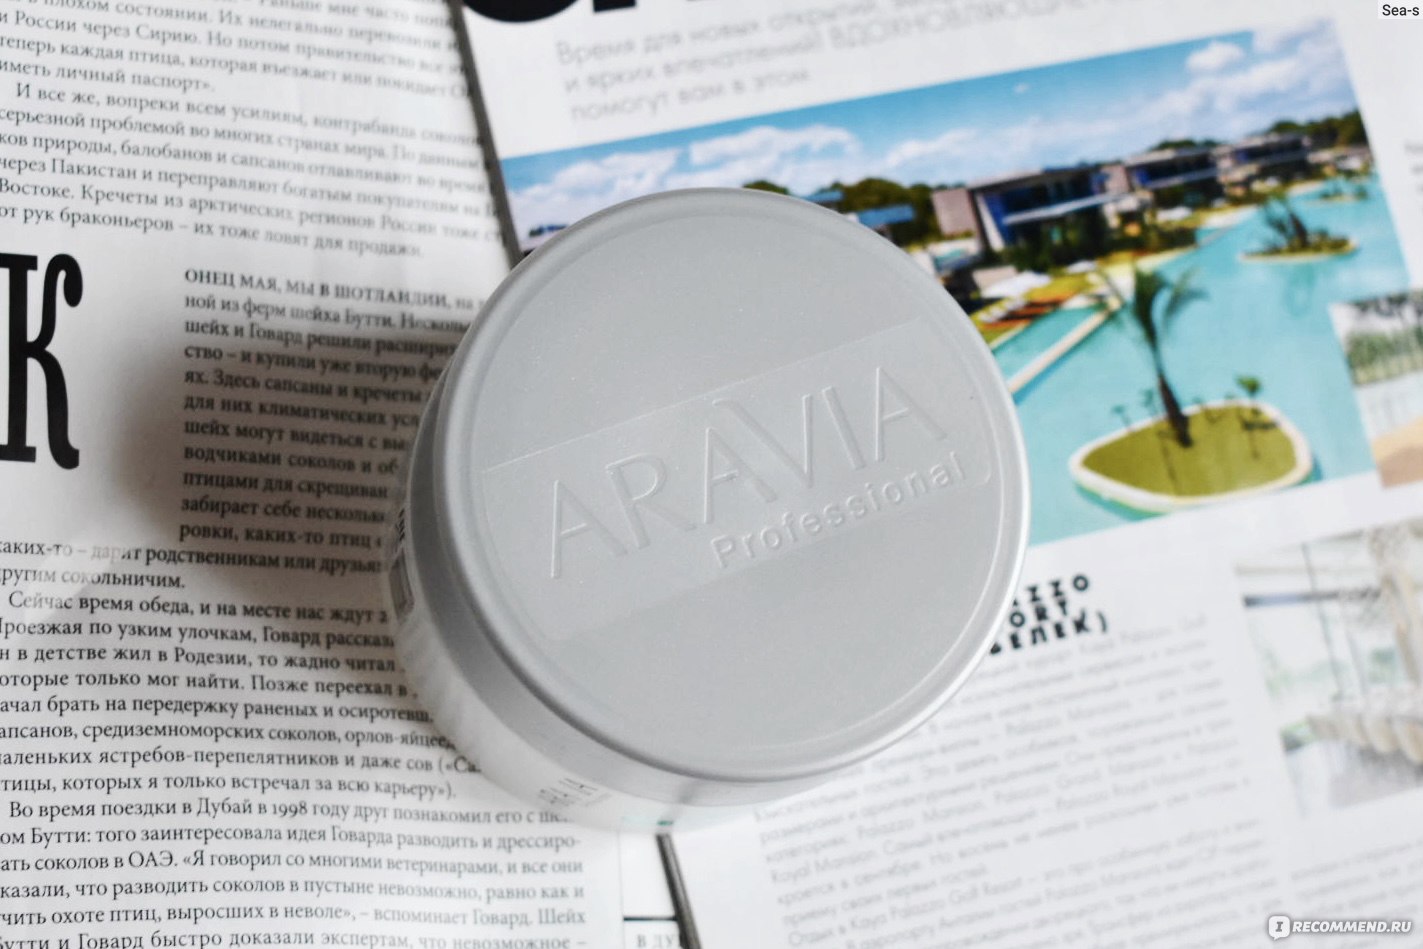 Крем для лица суперувлажнение и восстановление Aravia Balance Moisture Cream 10% мочевины